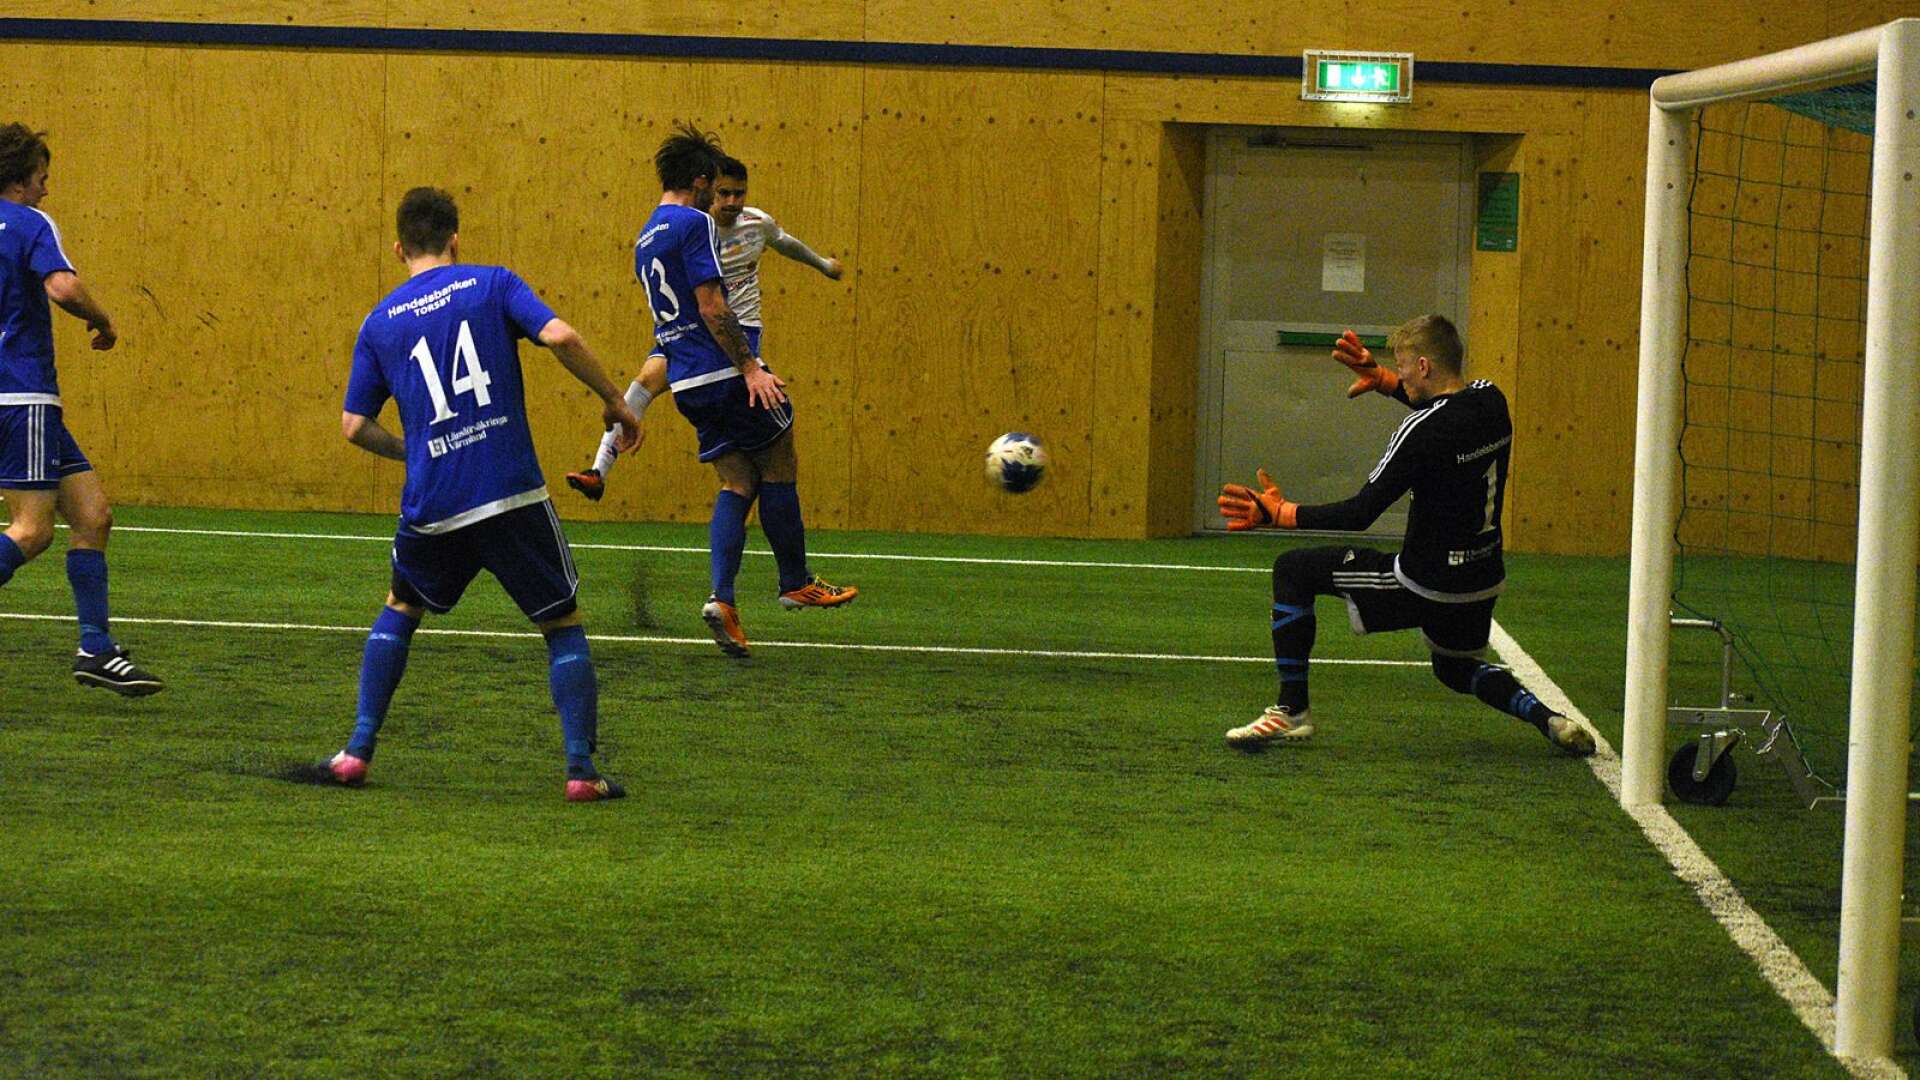 Inomhuscupen Eitech Cup i Fotbollshallen i Sunne.